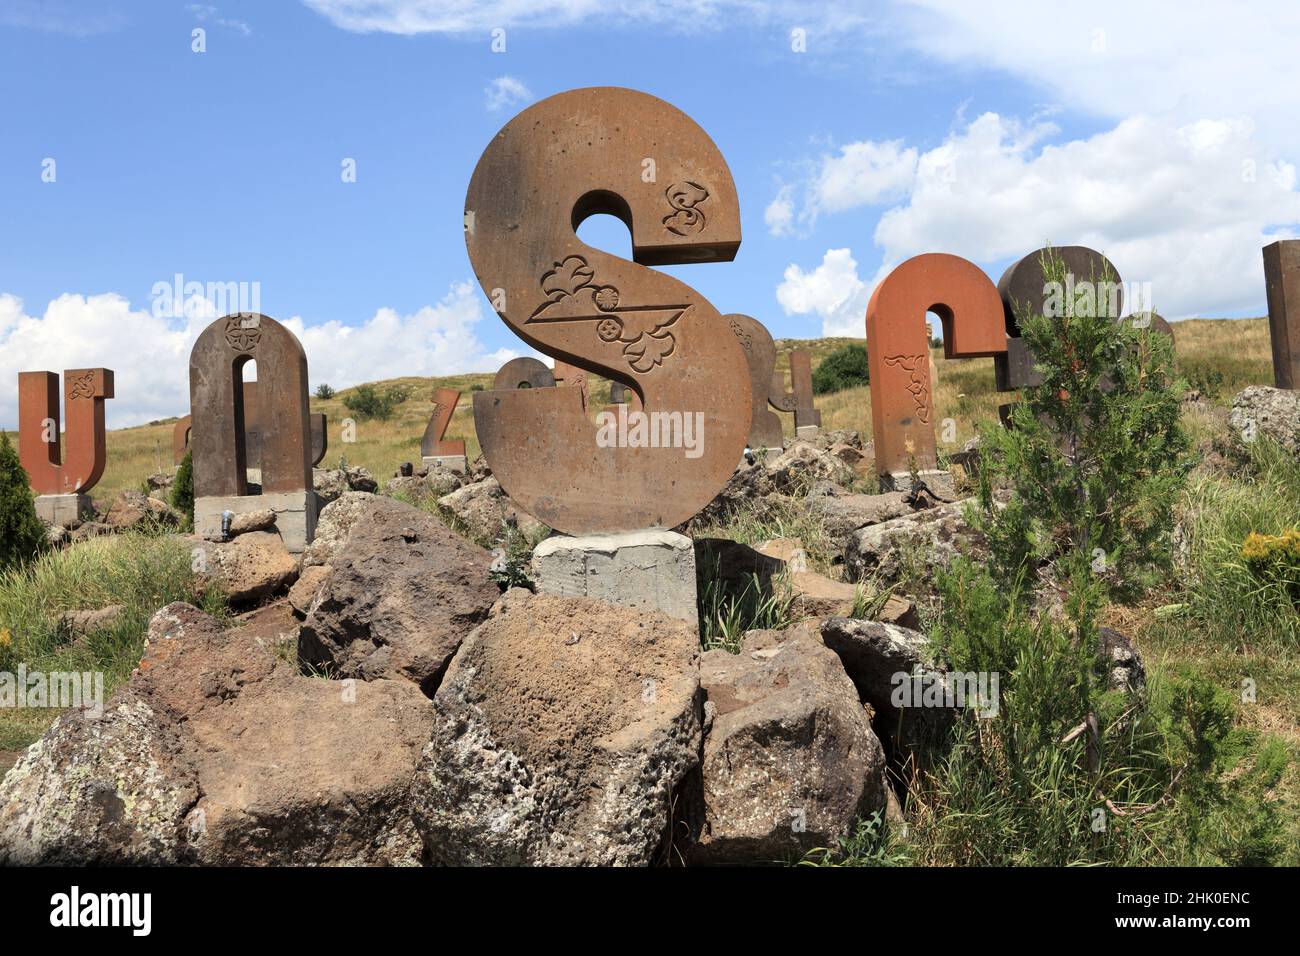 This is monument for an armenian alphabet, Armenia Stock Photo